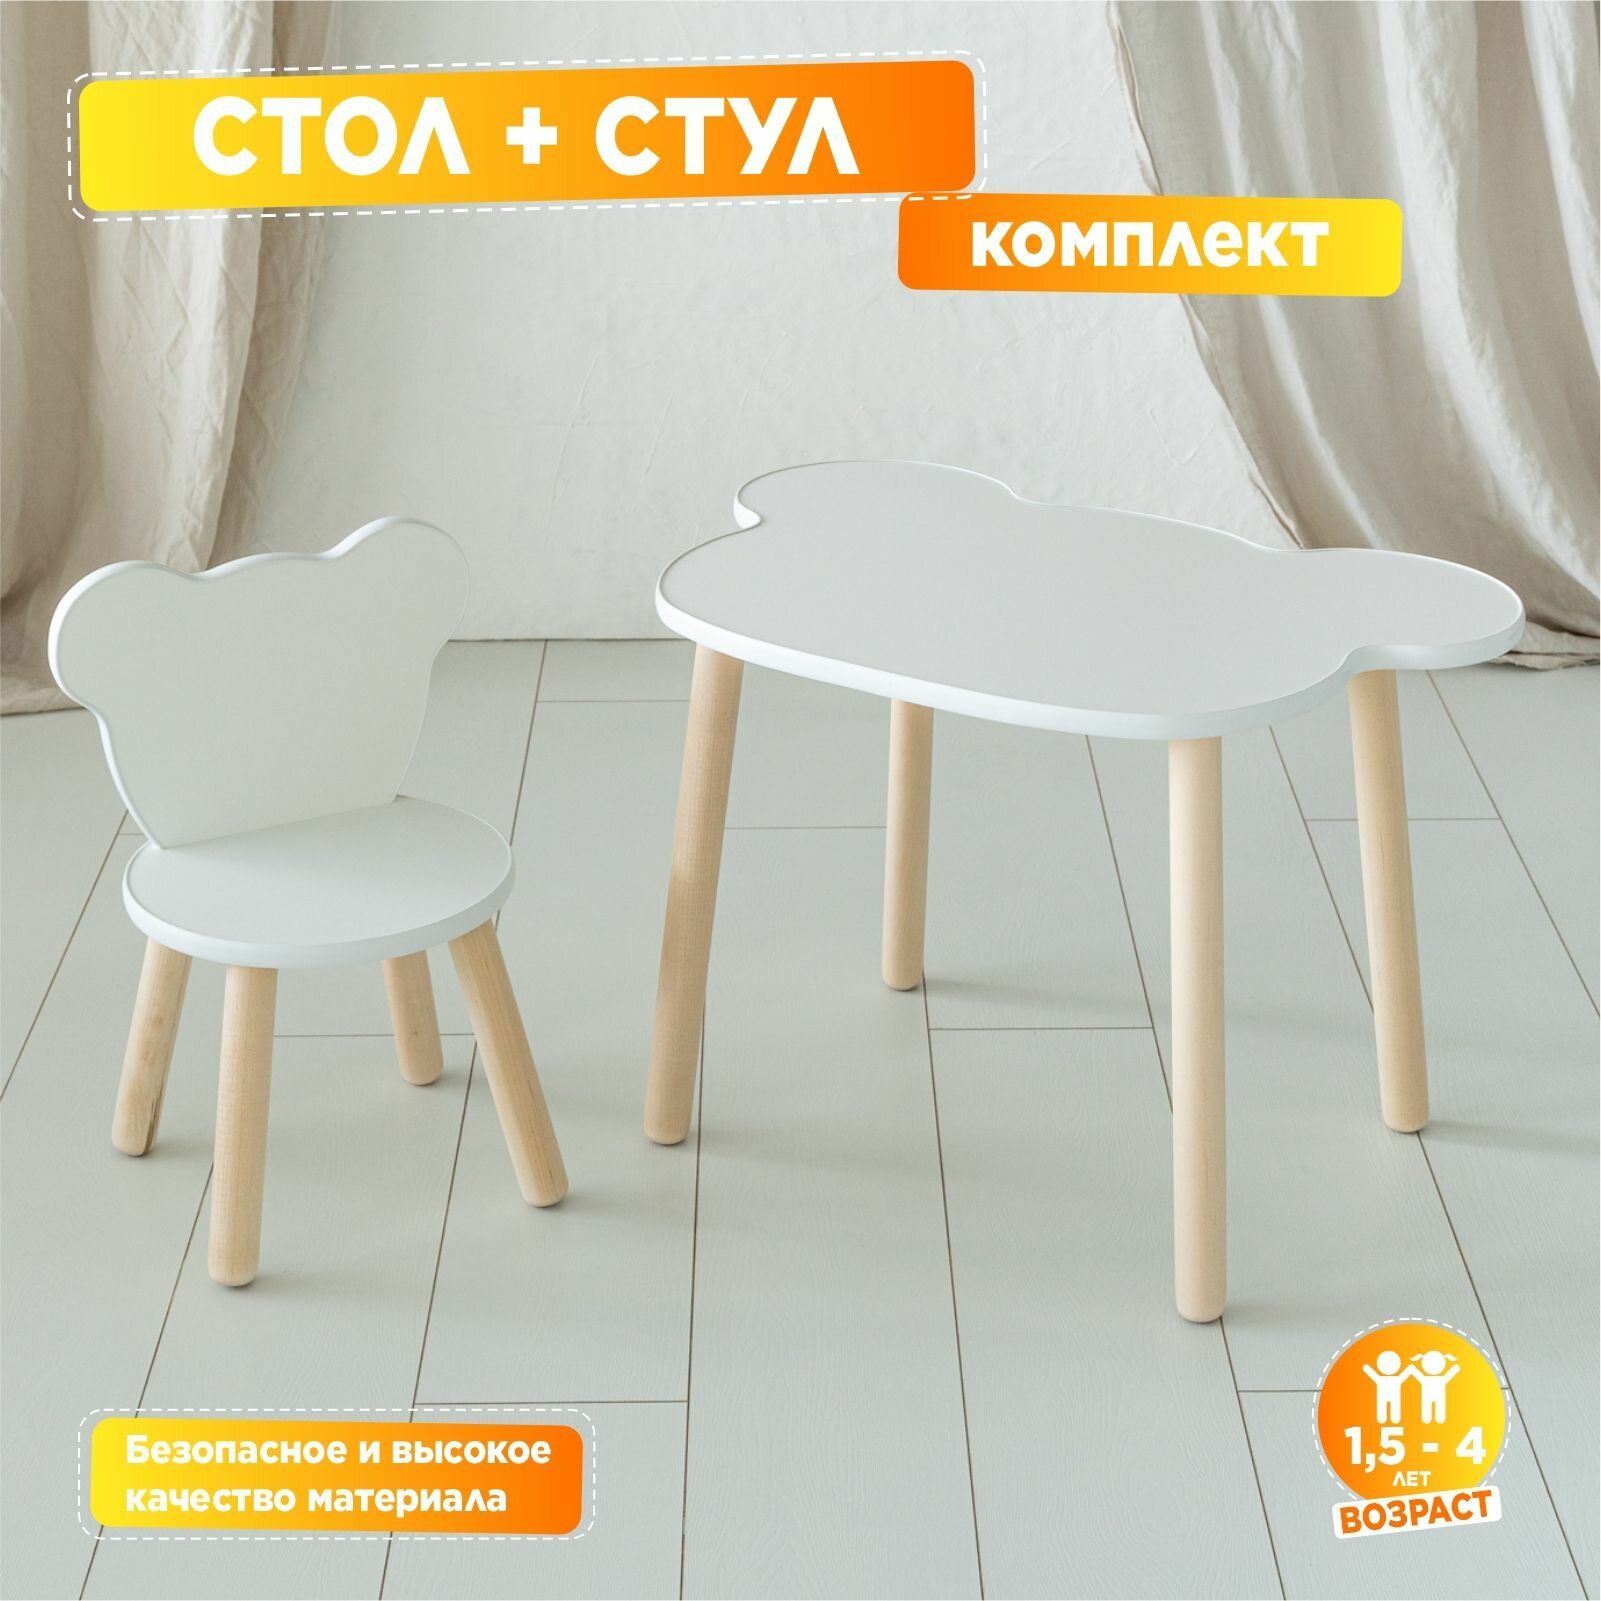 Стол и стул детские комплект "Мишка + Мишка" TODI